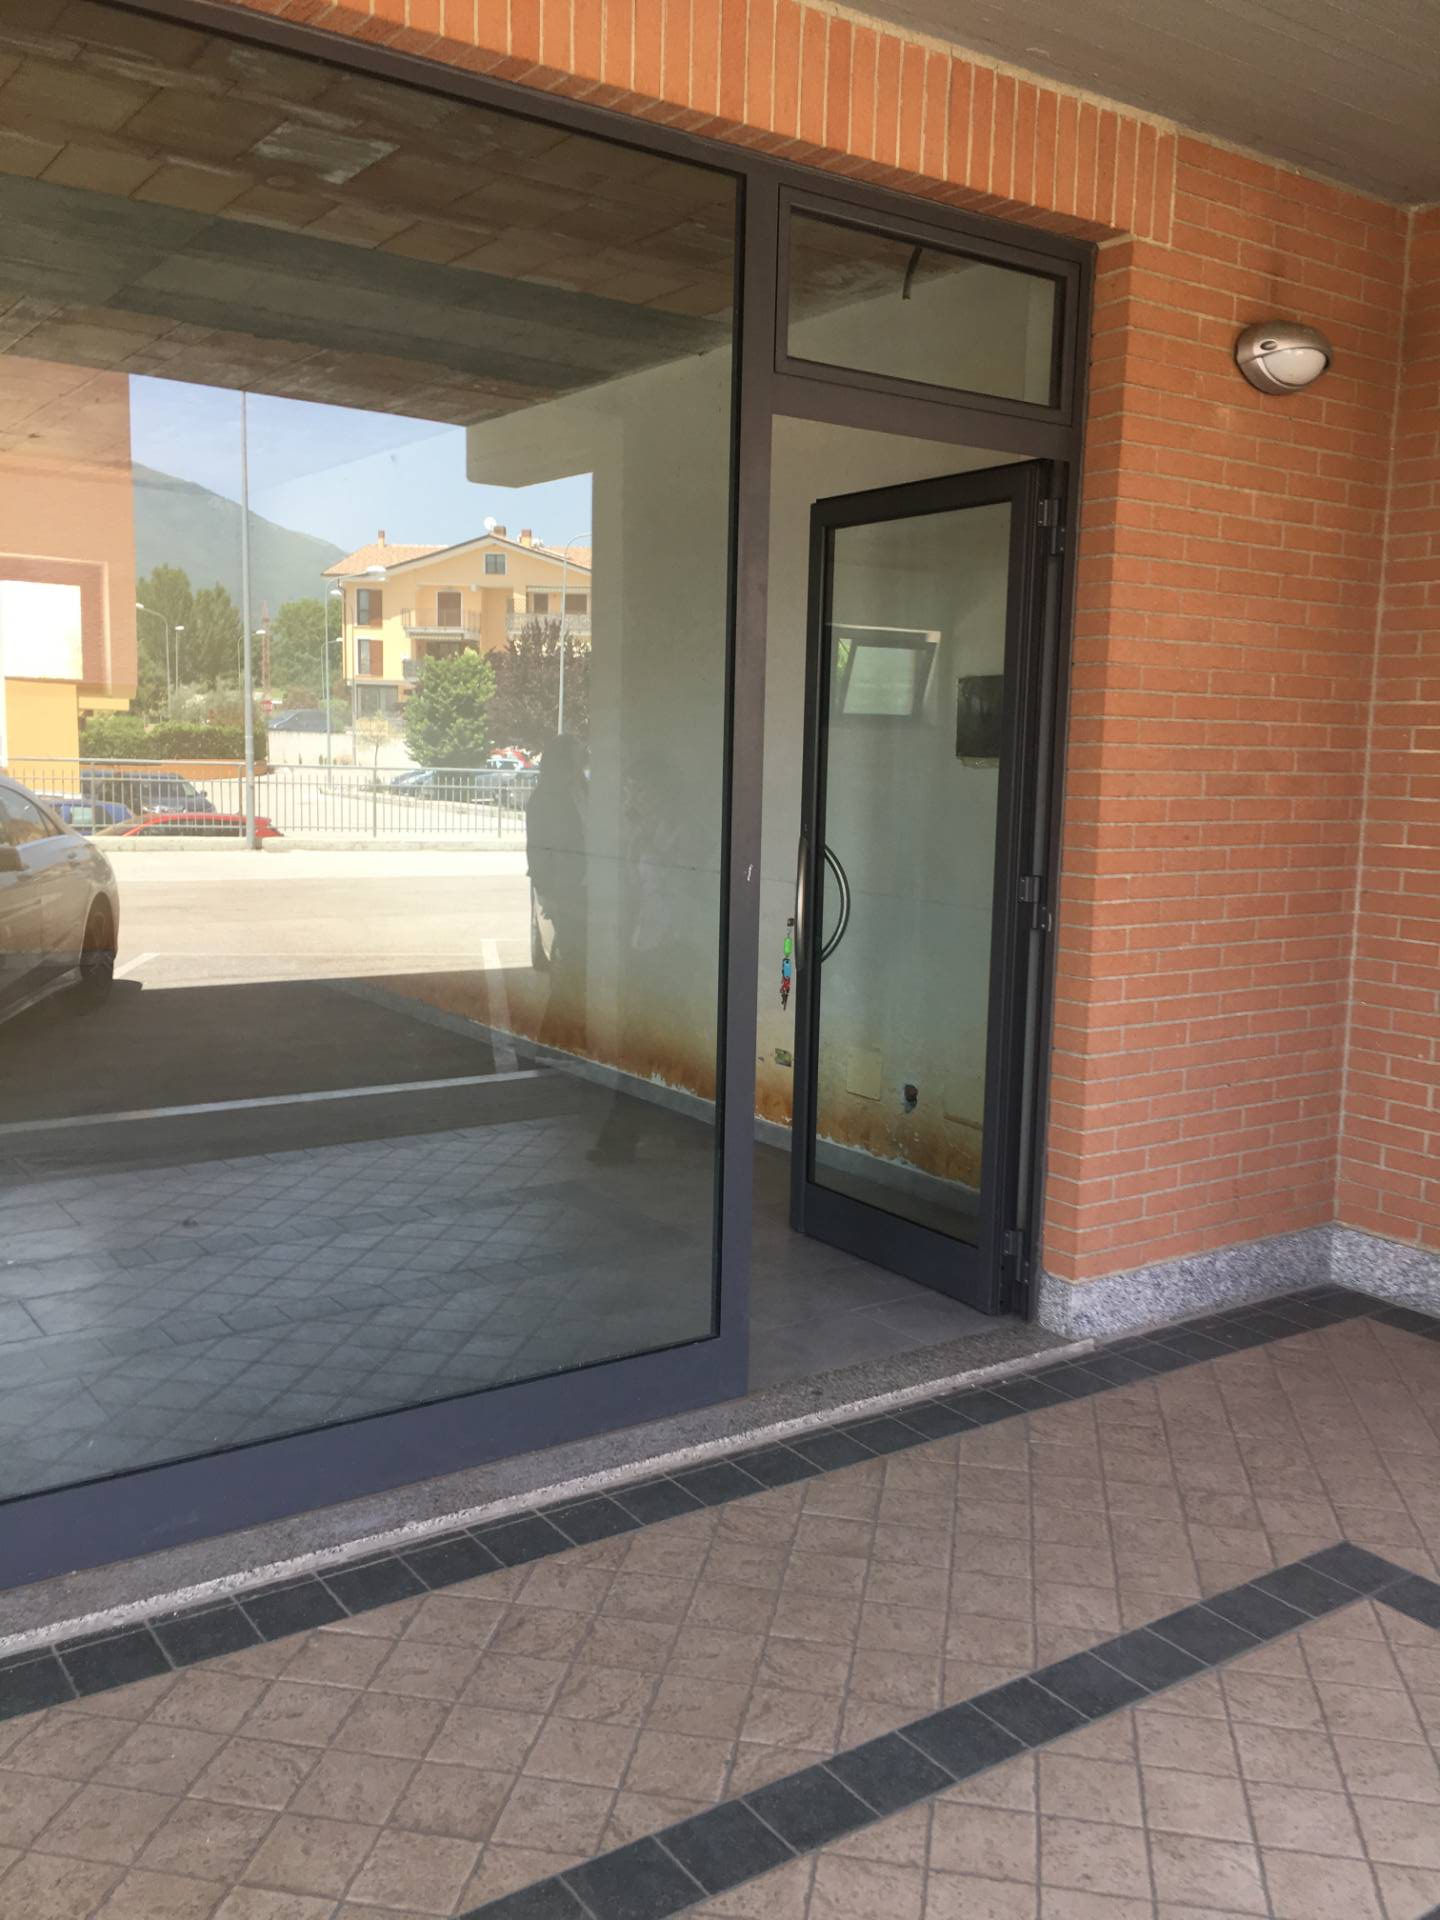 Negozio / Locale in vendita a Veroli, 9999 locali, zona Località: CaseCampoli-Panetta, prezzo € 130.000 | CambioCasa.it